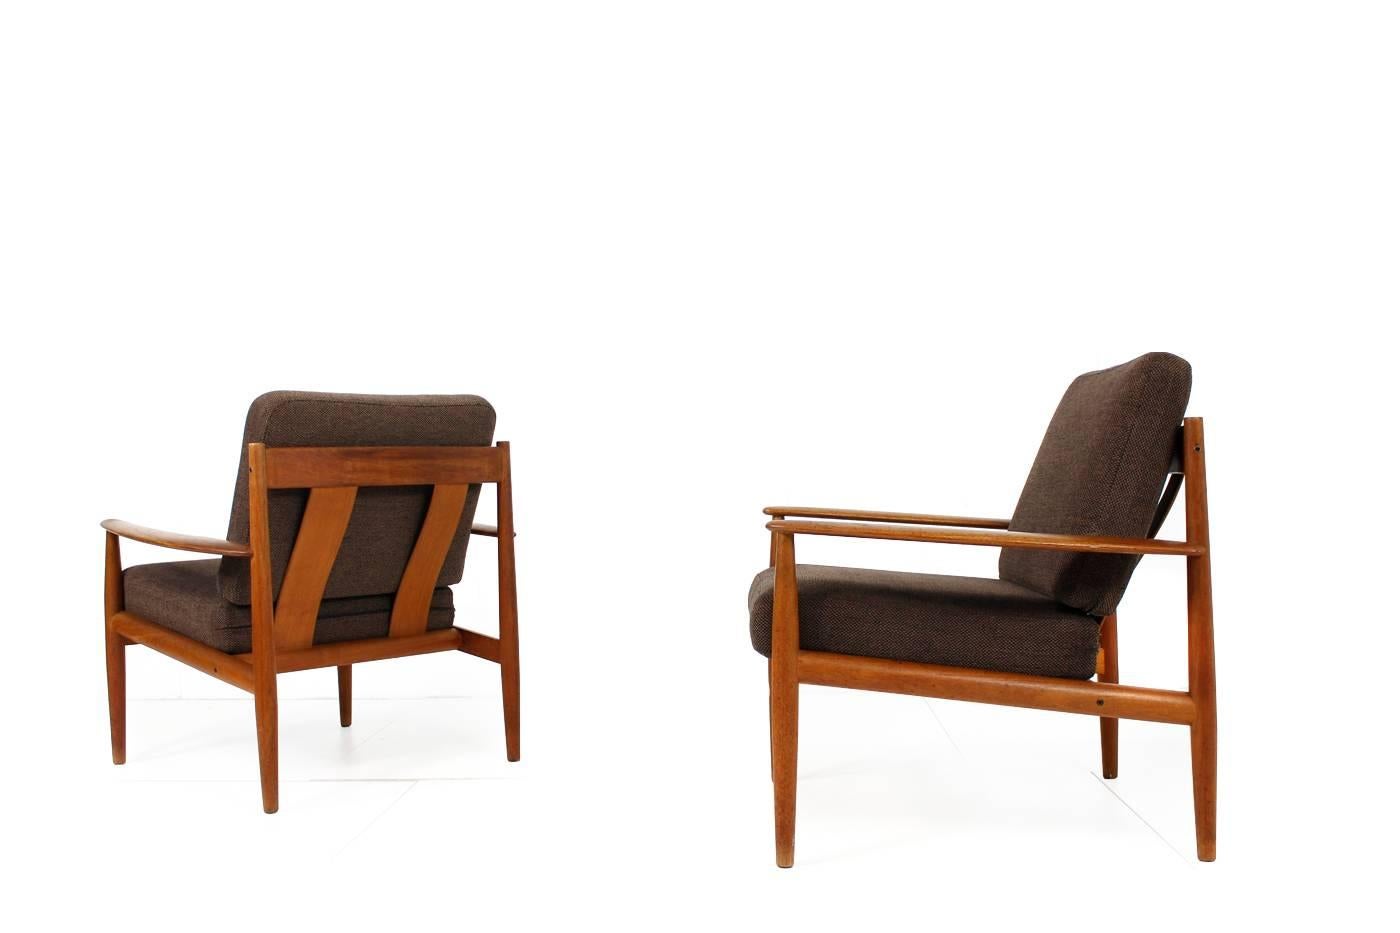 Pair of 1960s Grete Jalk Teak Easy Chairs, France & Son, Denmark, Midcentury 1